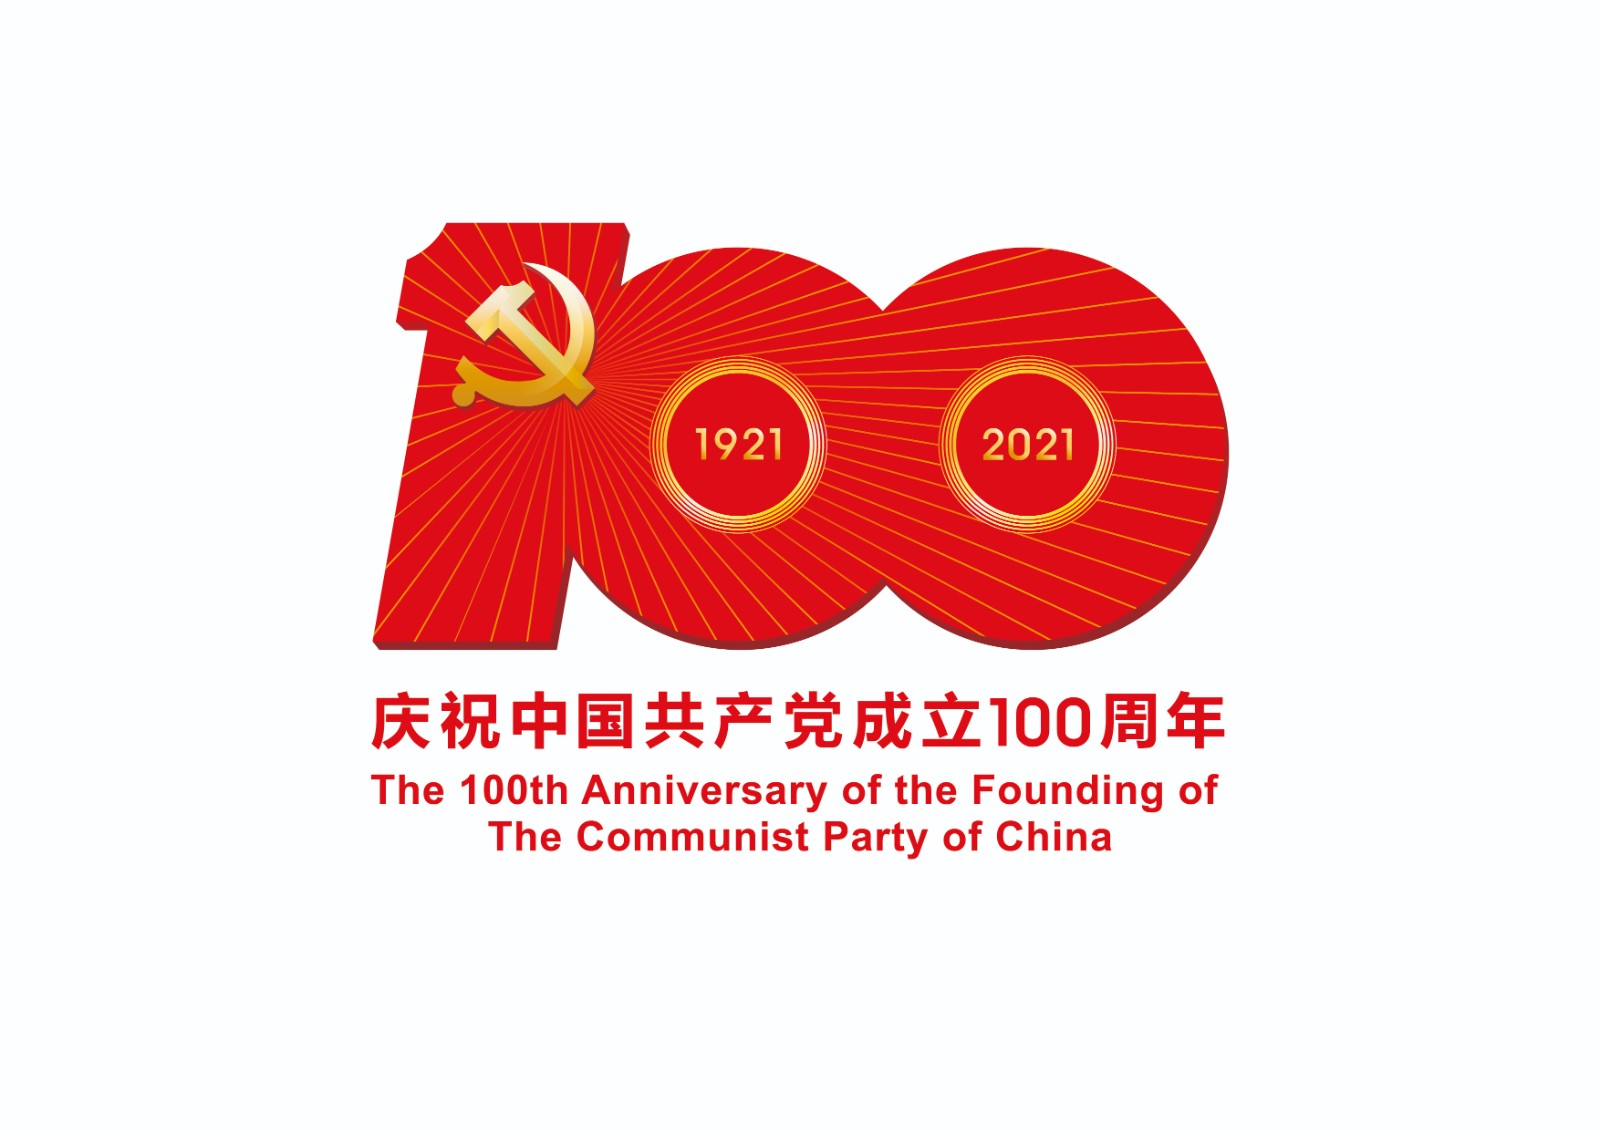 中国共产党成立100周年庆祝活动标识-JPEG格式.jpg